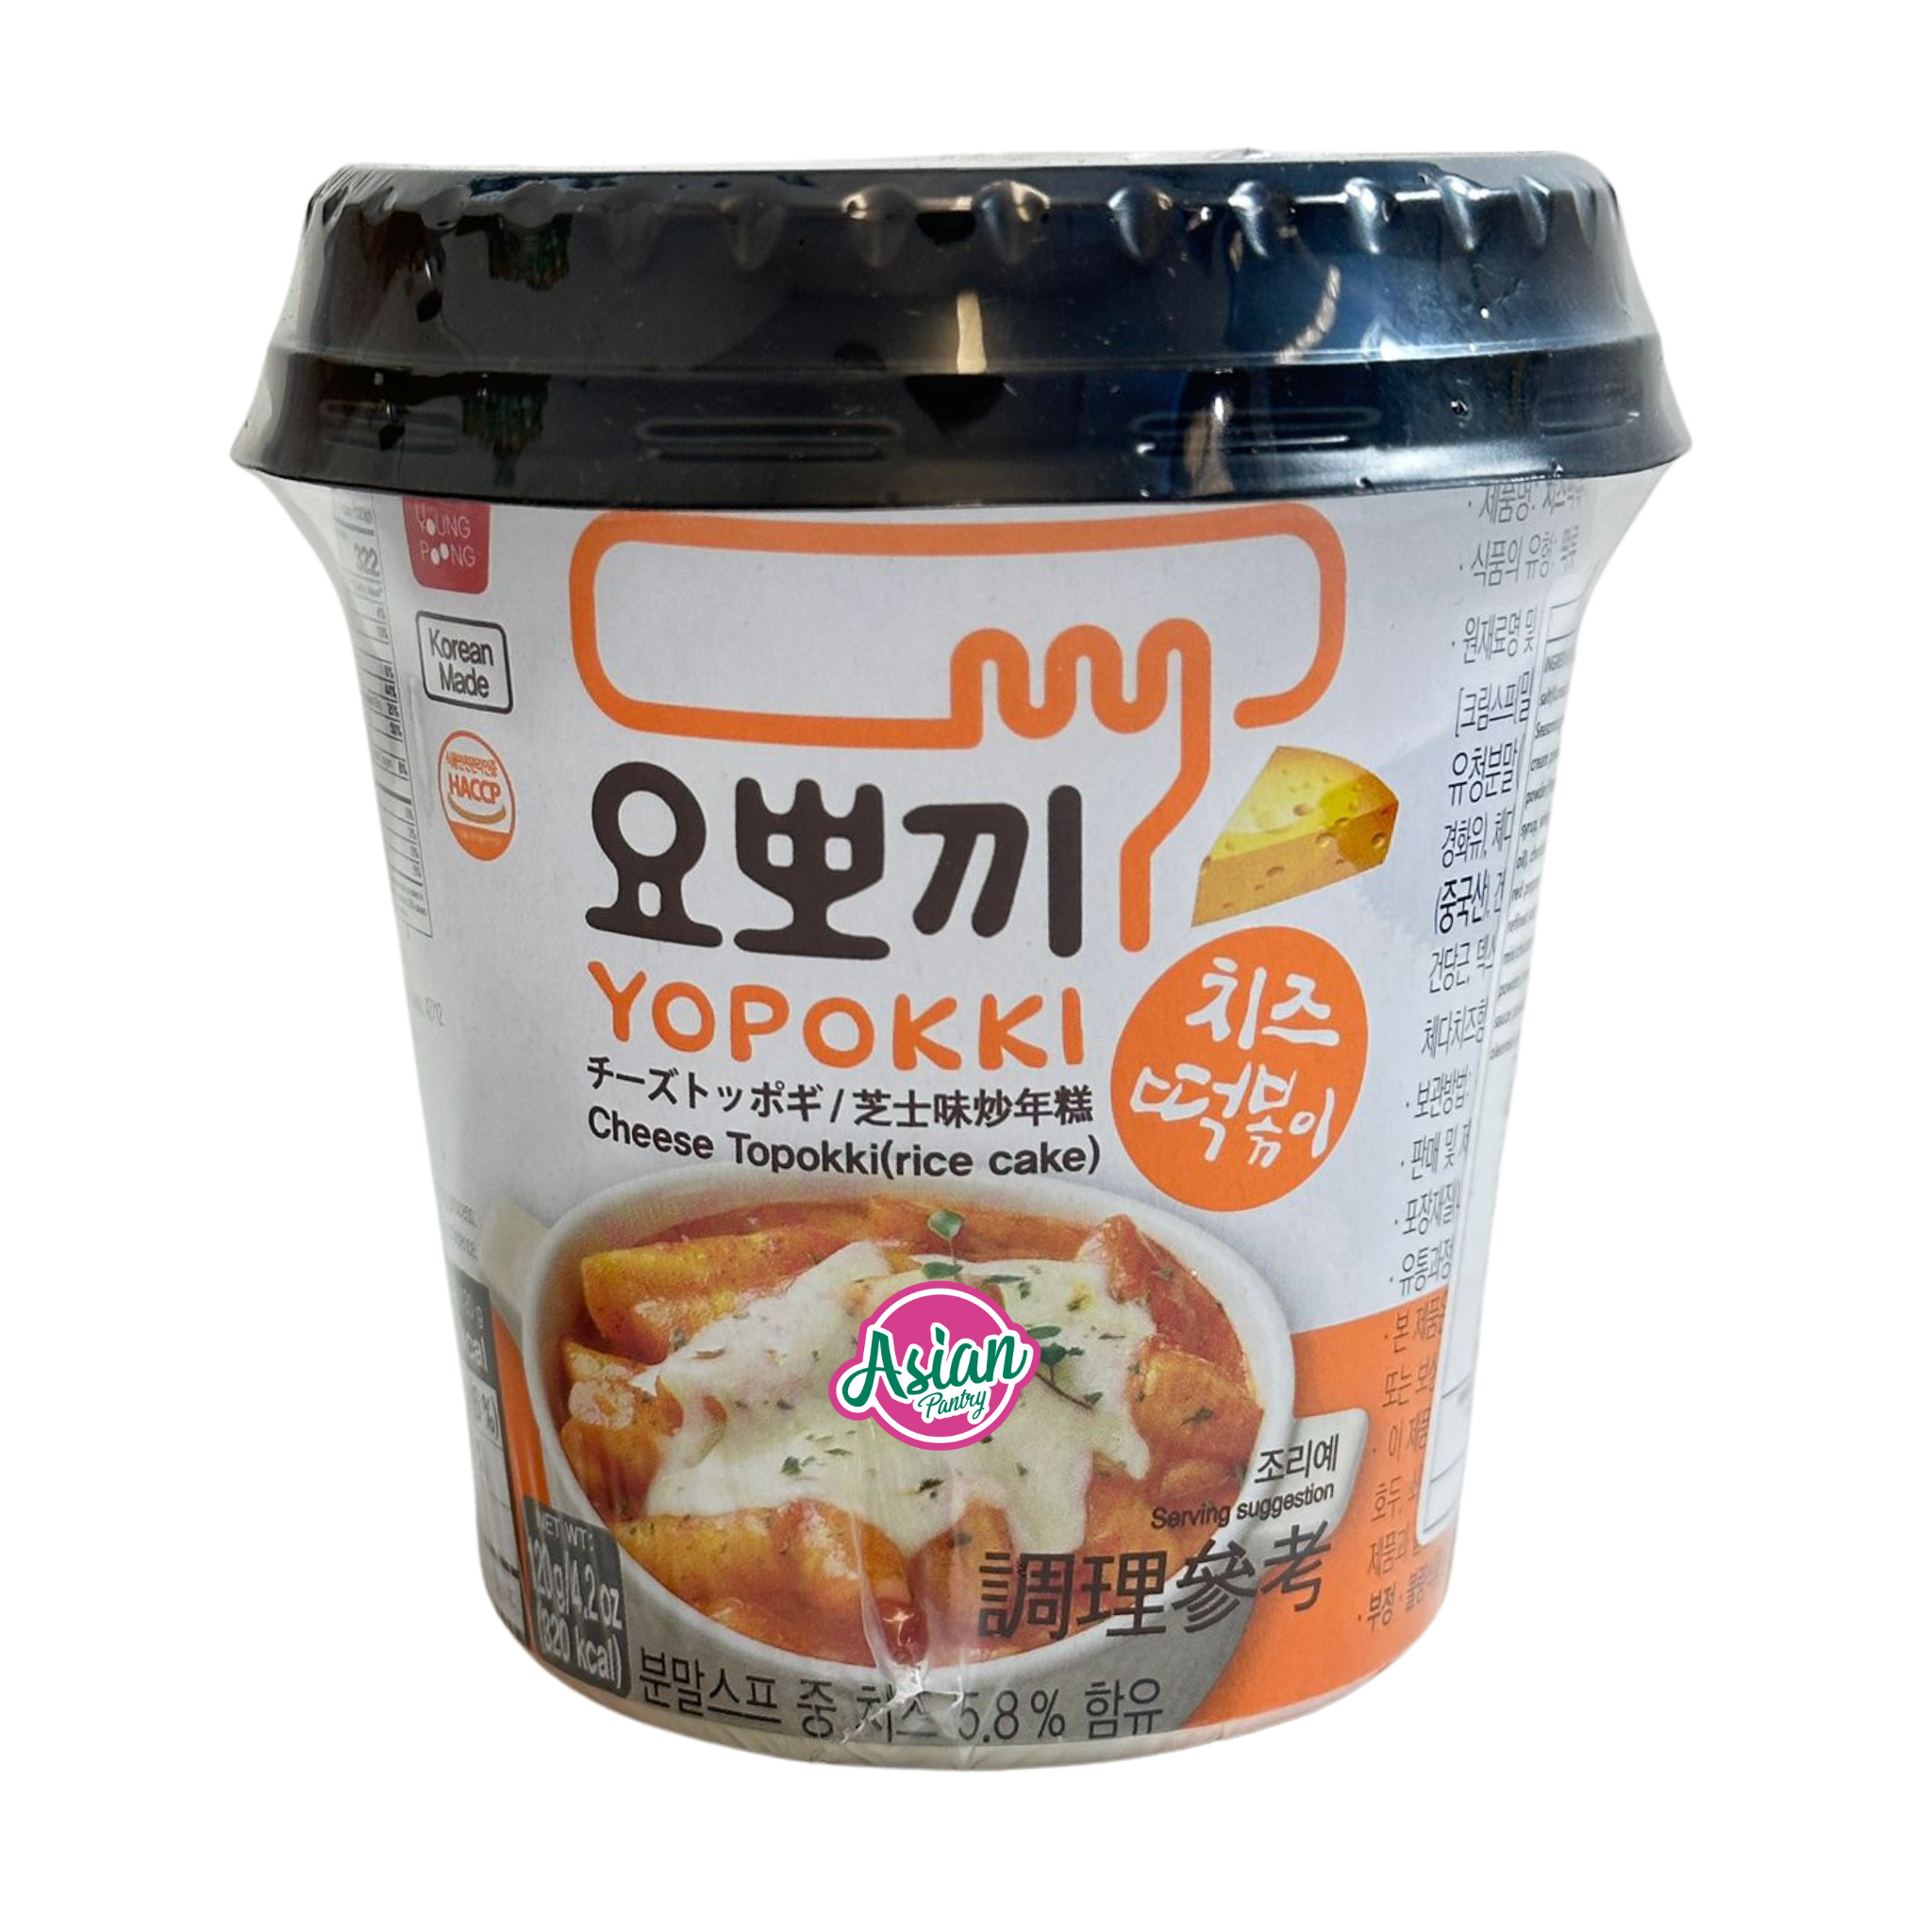 Yopokki Topokki Rice Cake Cup Tteokbokki (HALAL Original Jjajang